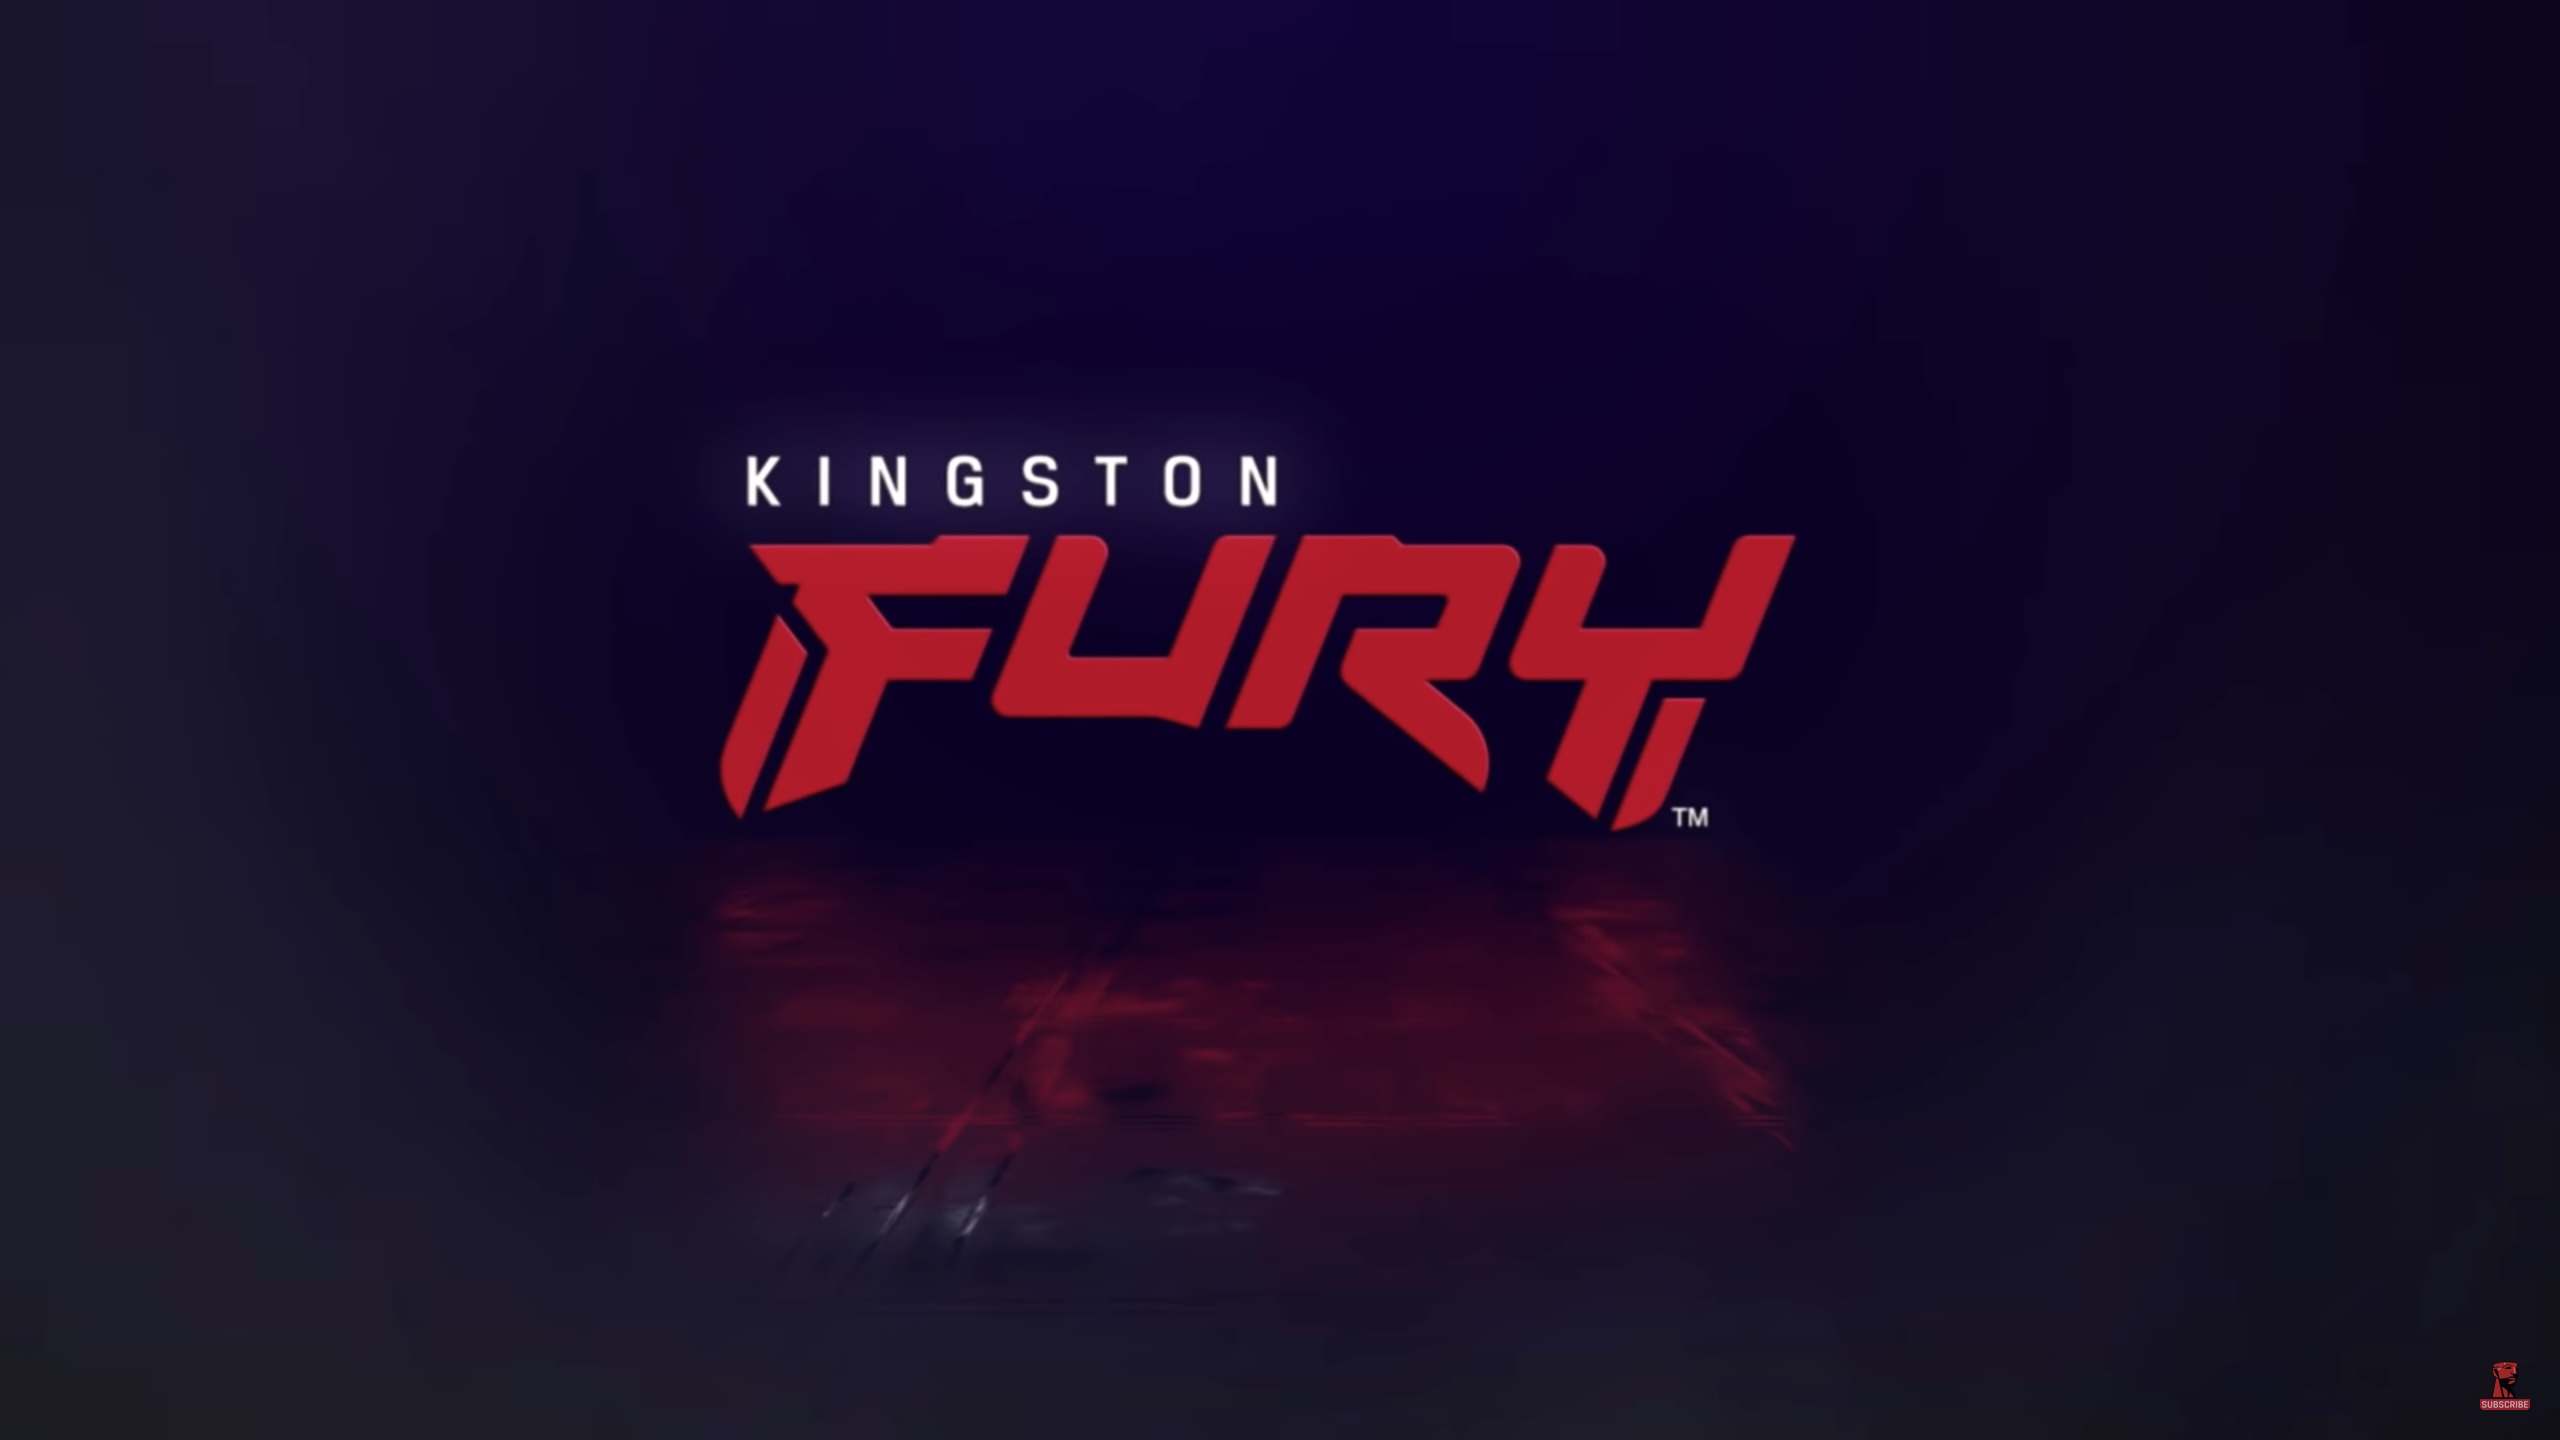 Kingston công bố thương hiệu bộ nhớ hiệu năng cao Kingston FURY dành cho game thủ